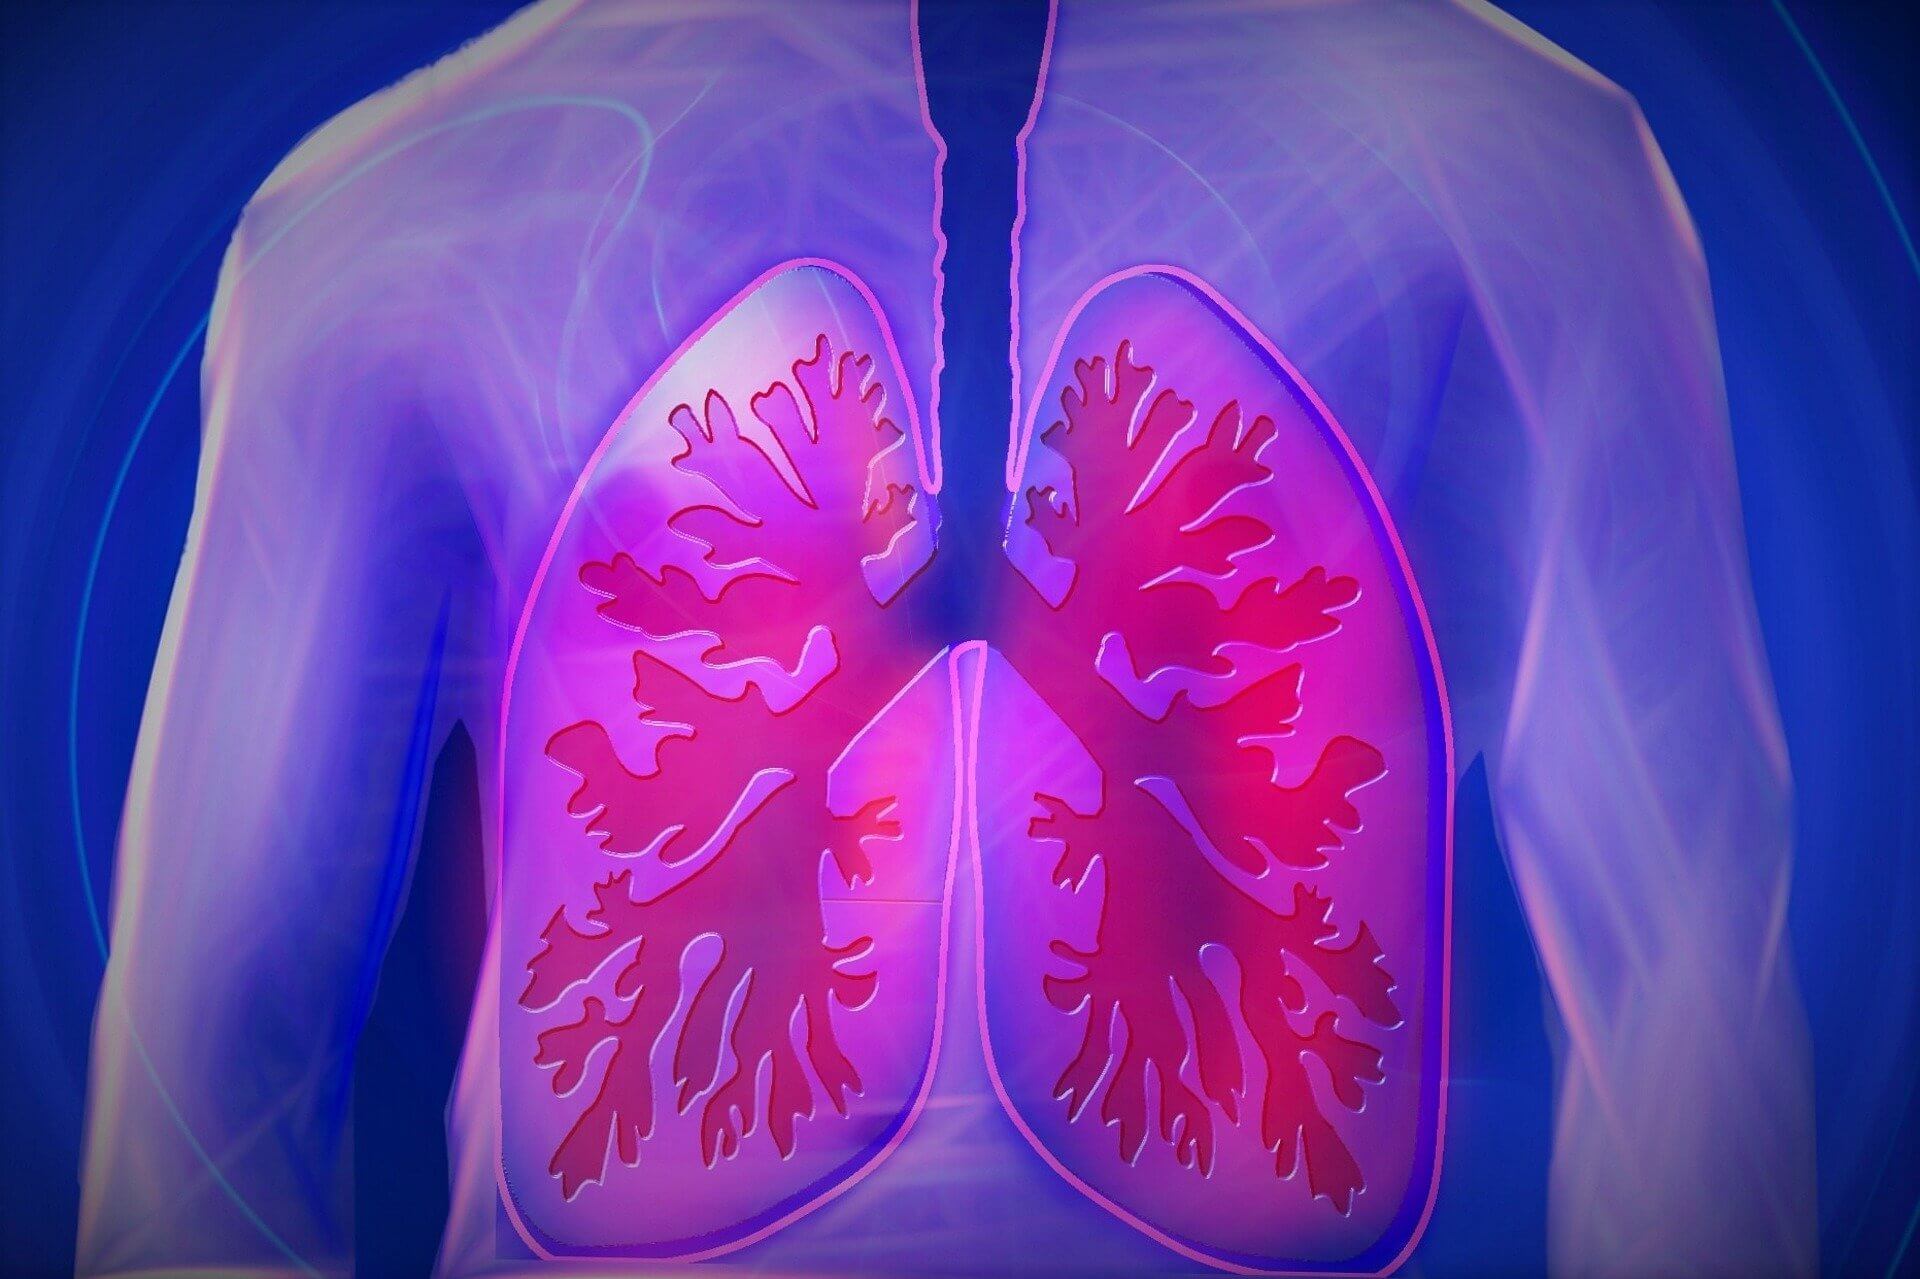 Un nuevo análisis de sangre detecta el cáncer de pulmón c de alta precisión